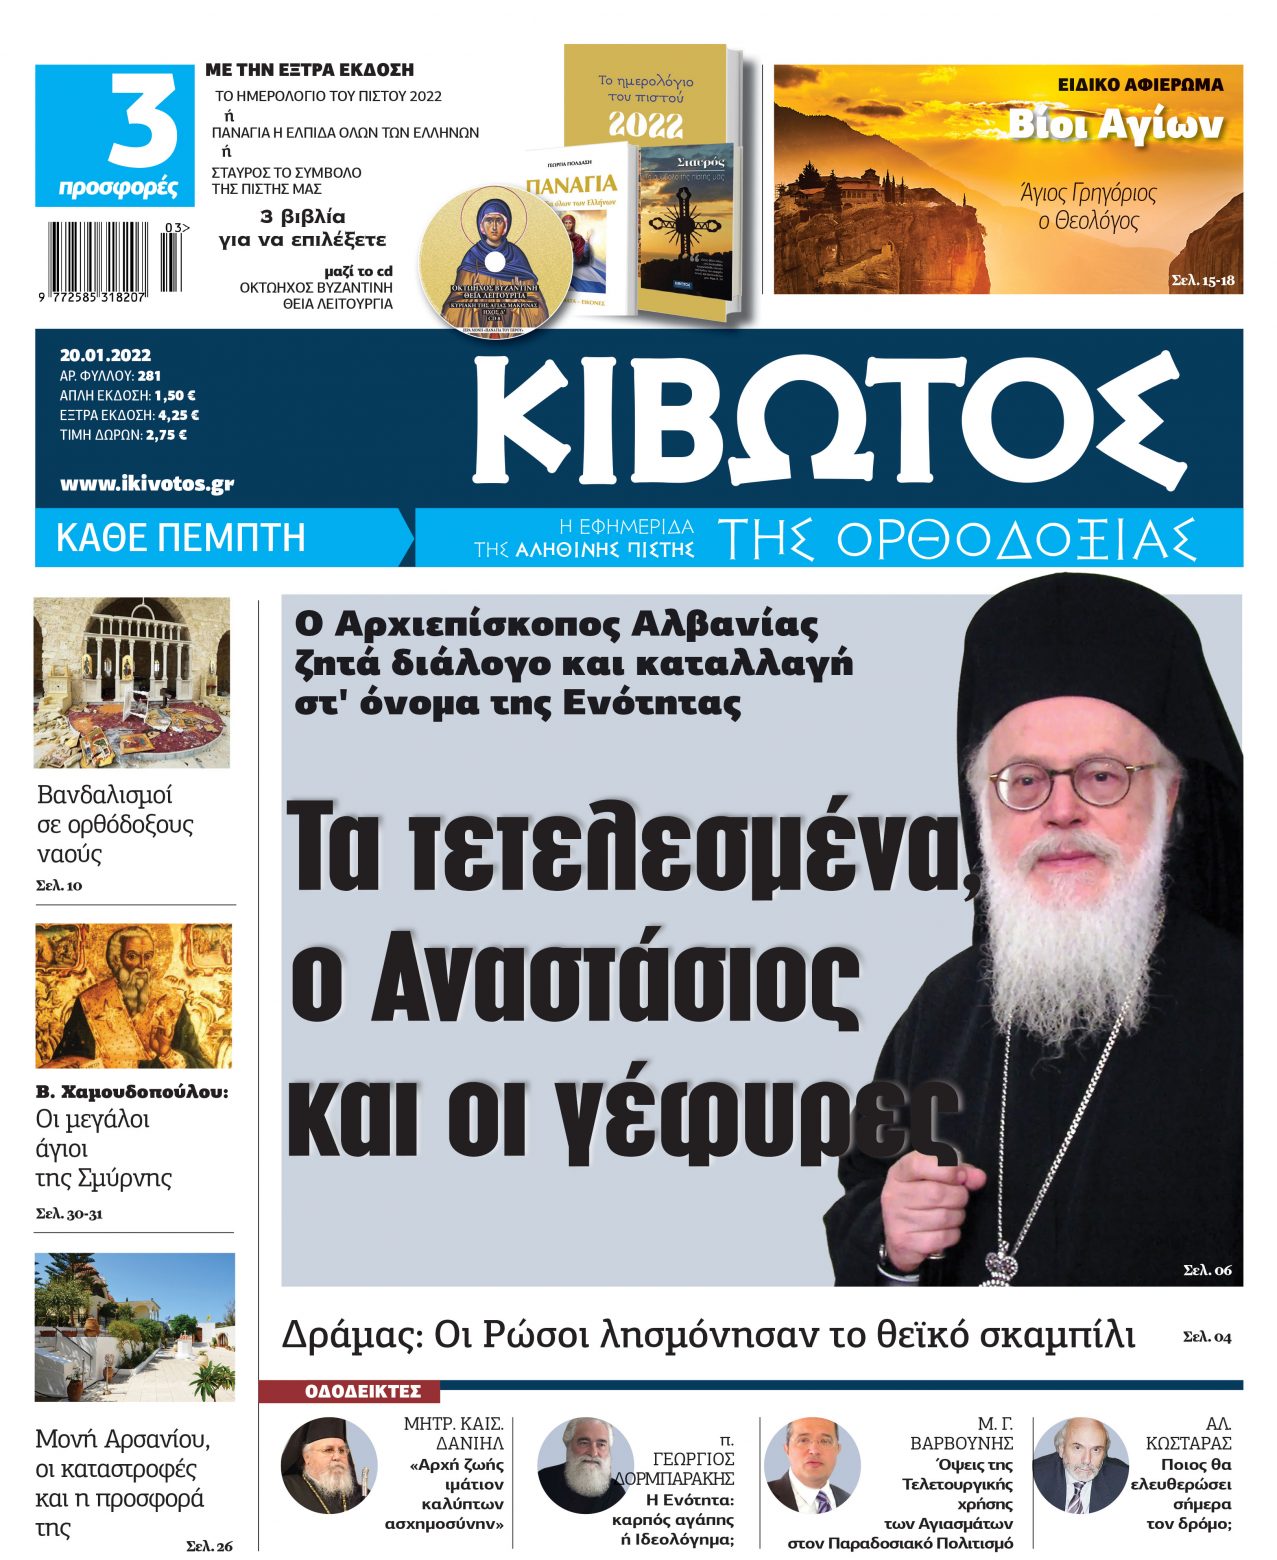 Κυκλοφορεί η εφημερίδα Κιβωτός της Ορθοδοξίας με μεγάλες προσφορές